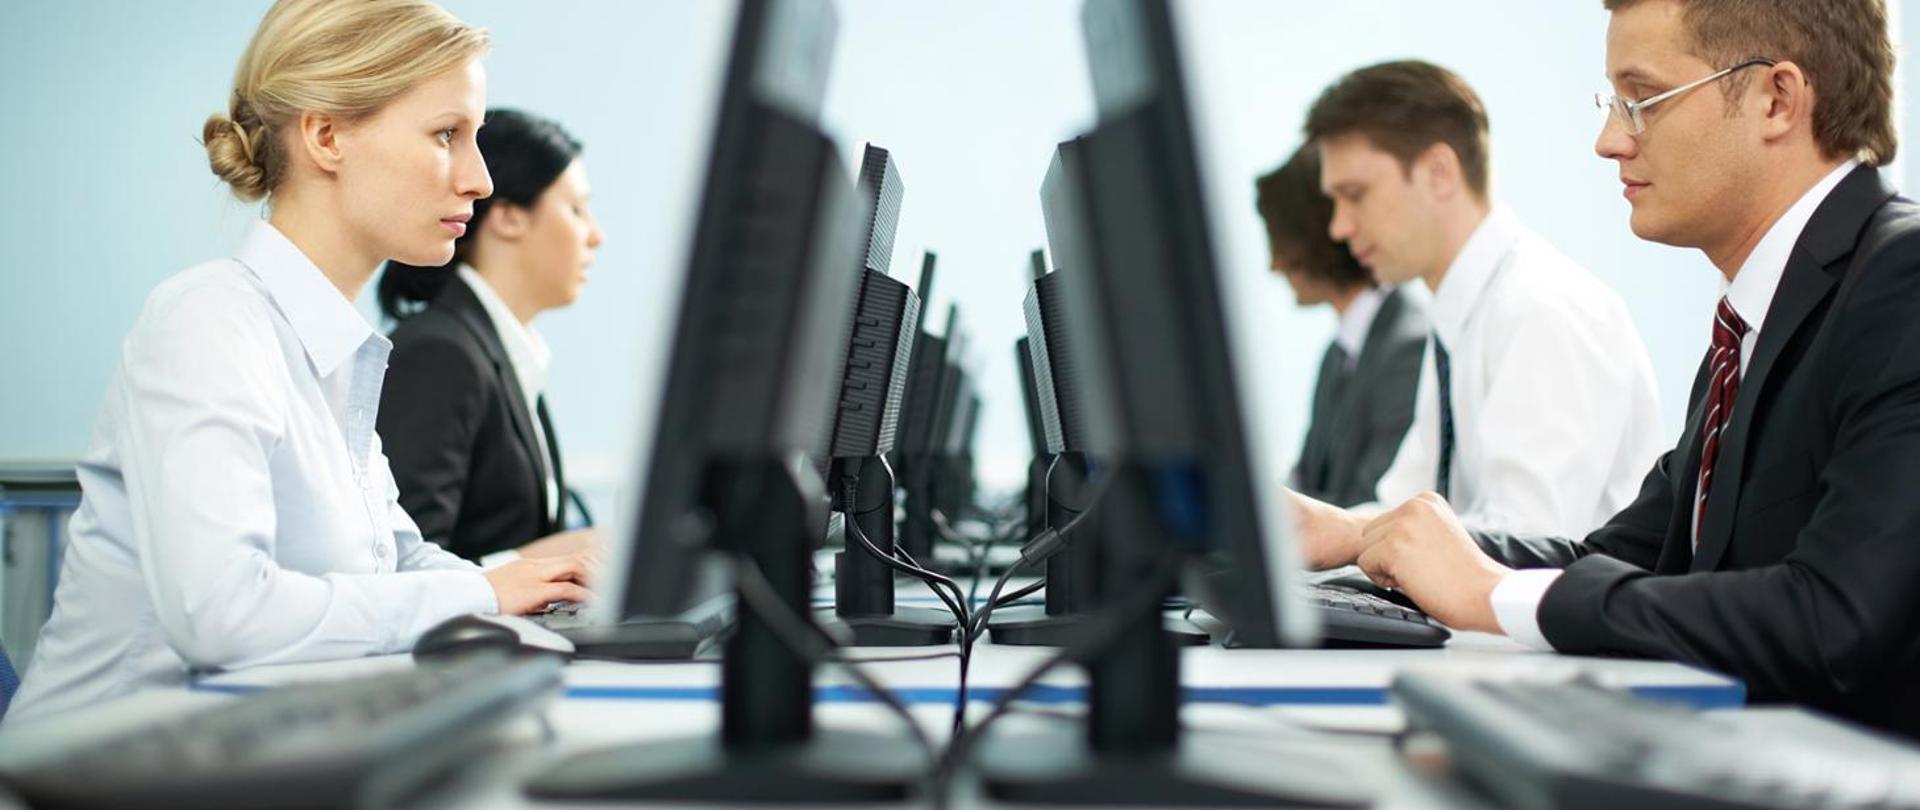 Zdjęcie przedstawia kobiety i mężczyzn siedzących przed komputerami